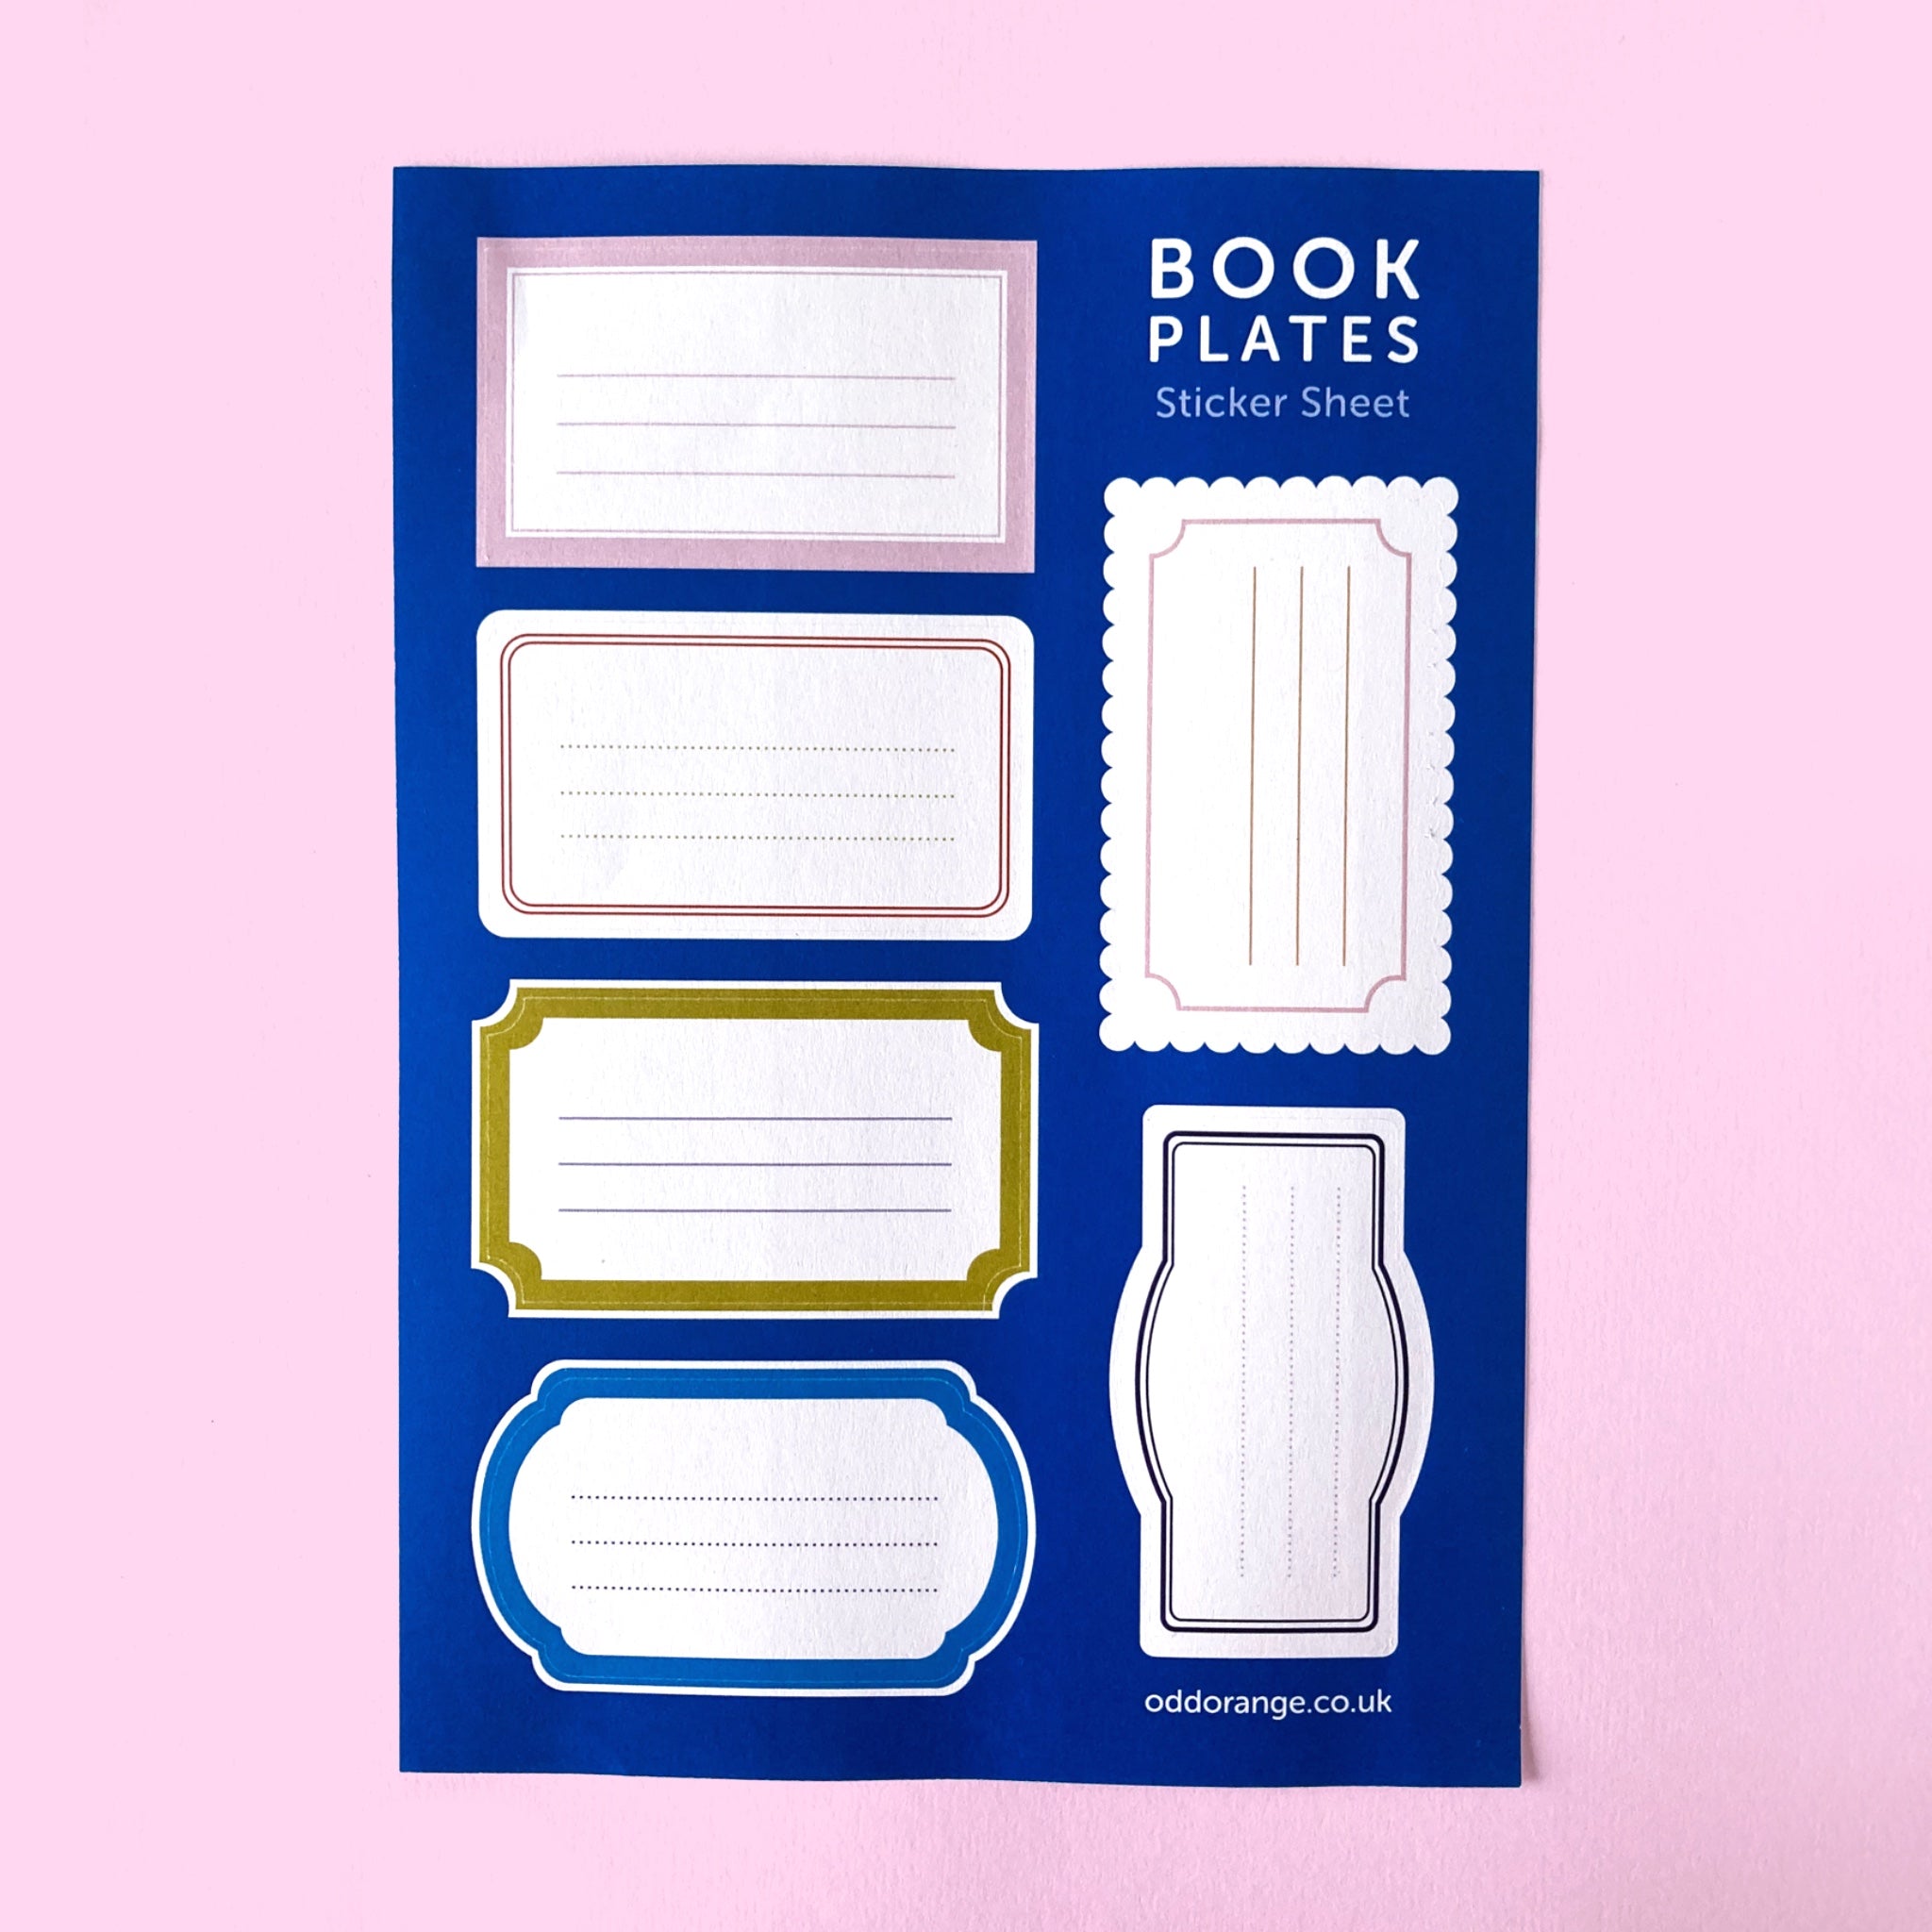 Book plates sticker sheet